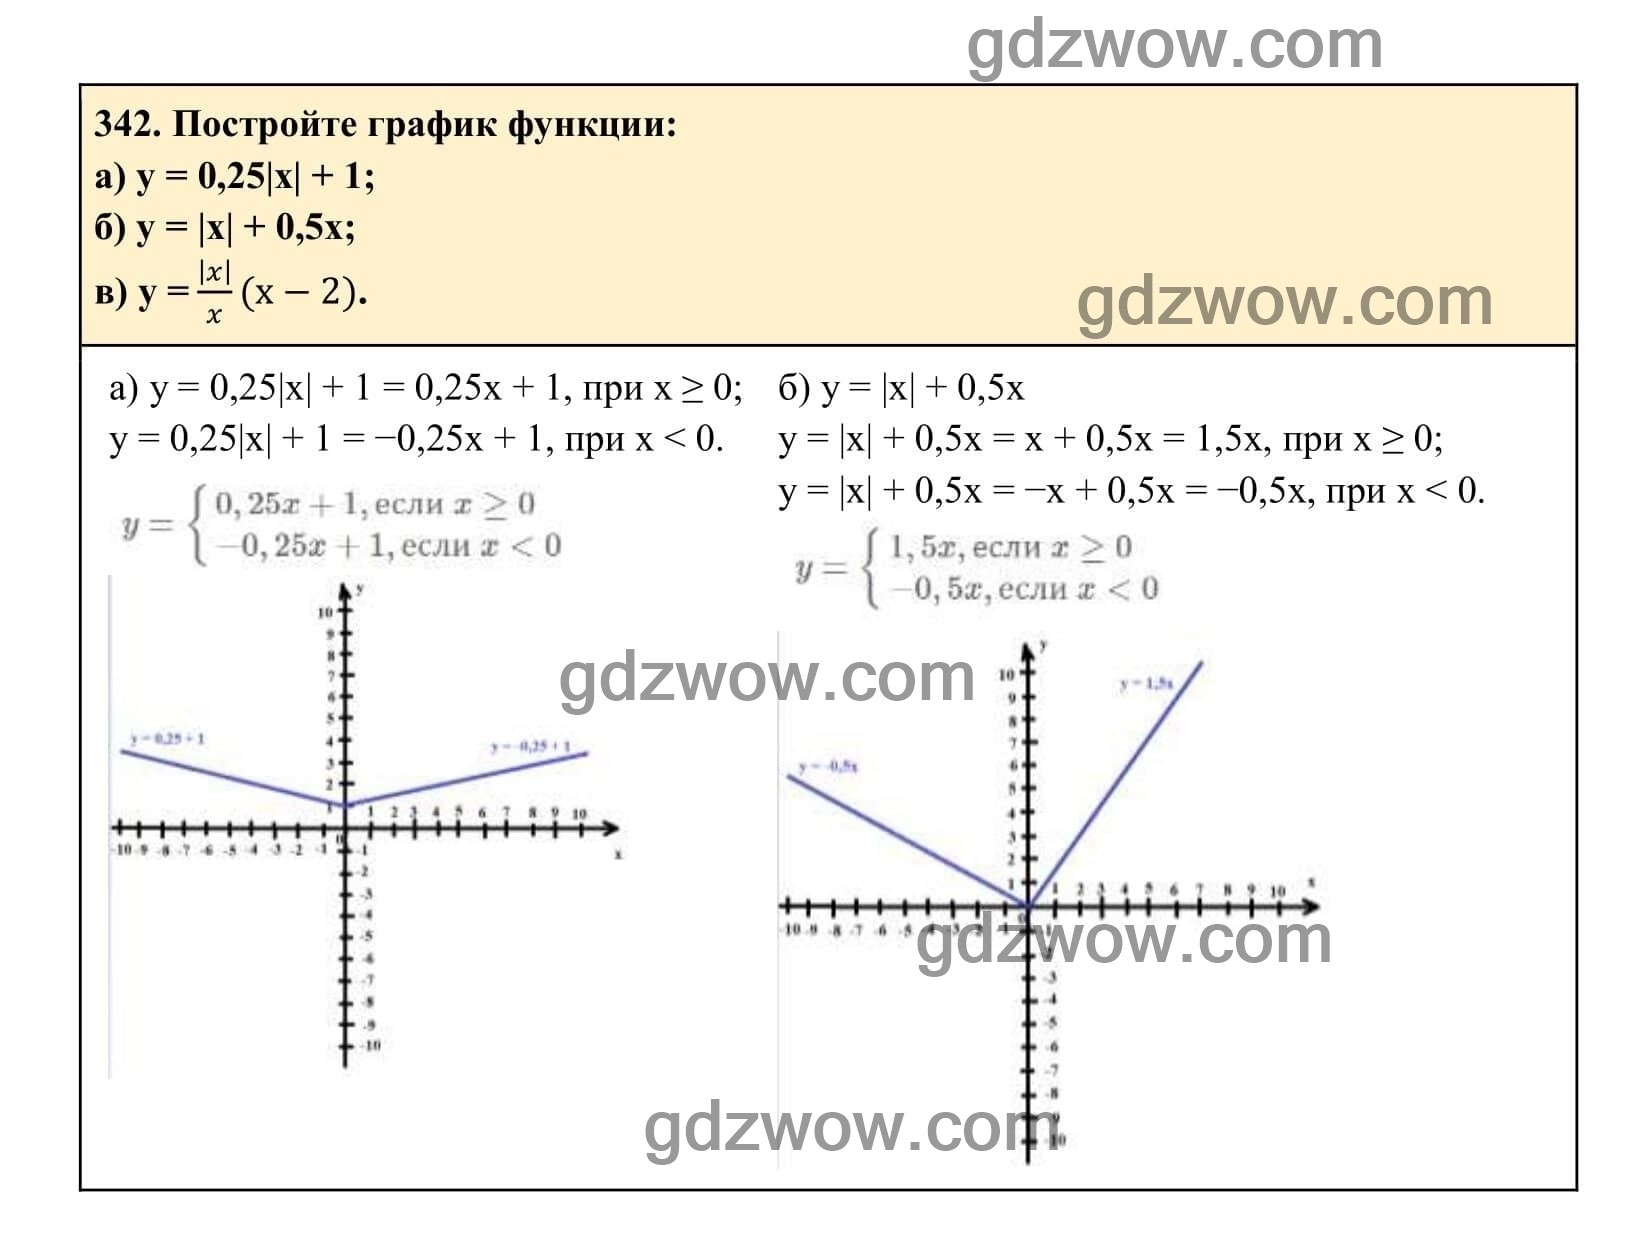 Упражнение 342 - ГДЗ по Алгебре 7 класс Учебник Макарычев (решебник) - GDZwow